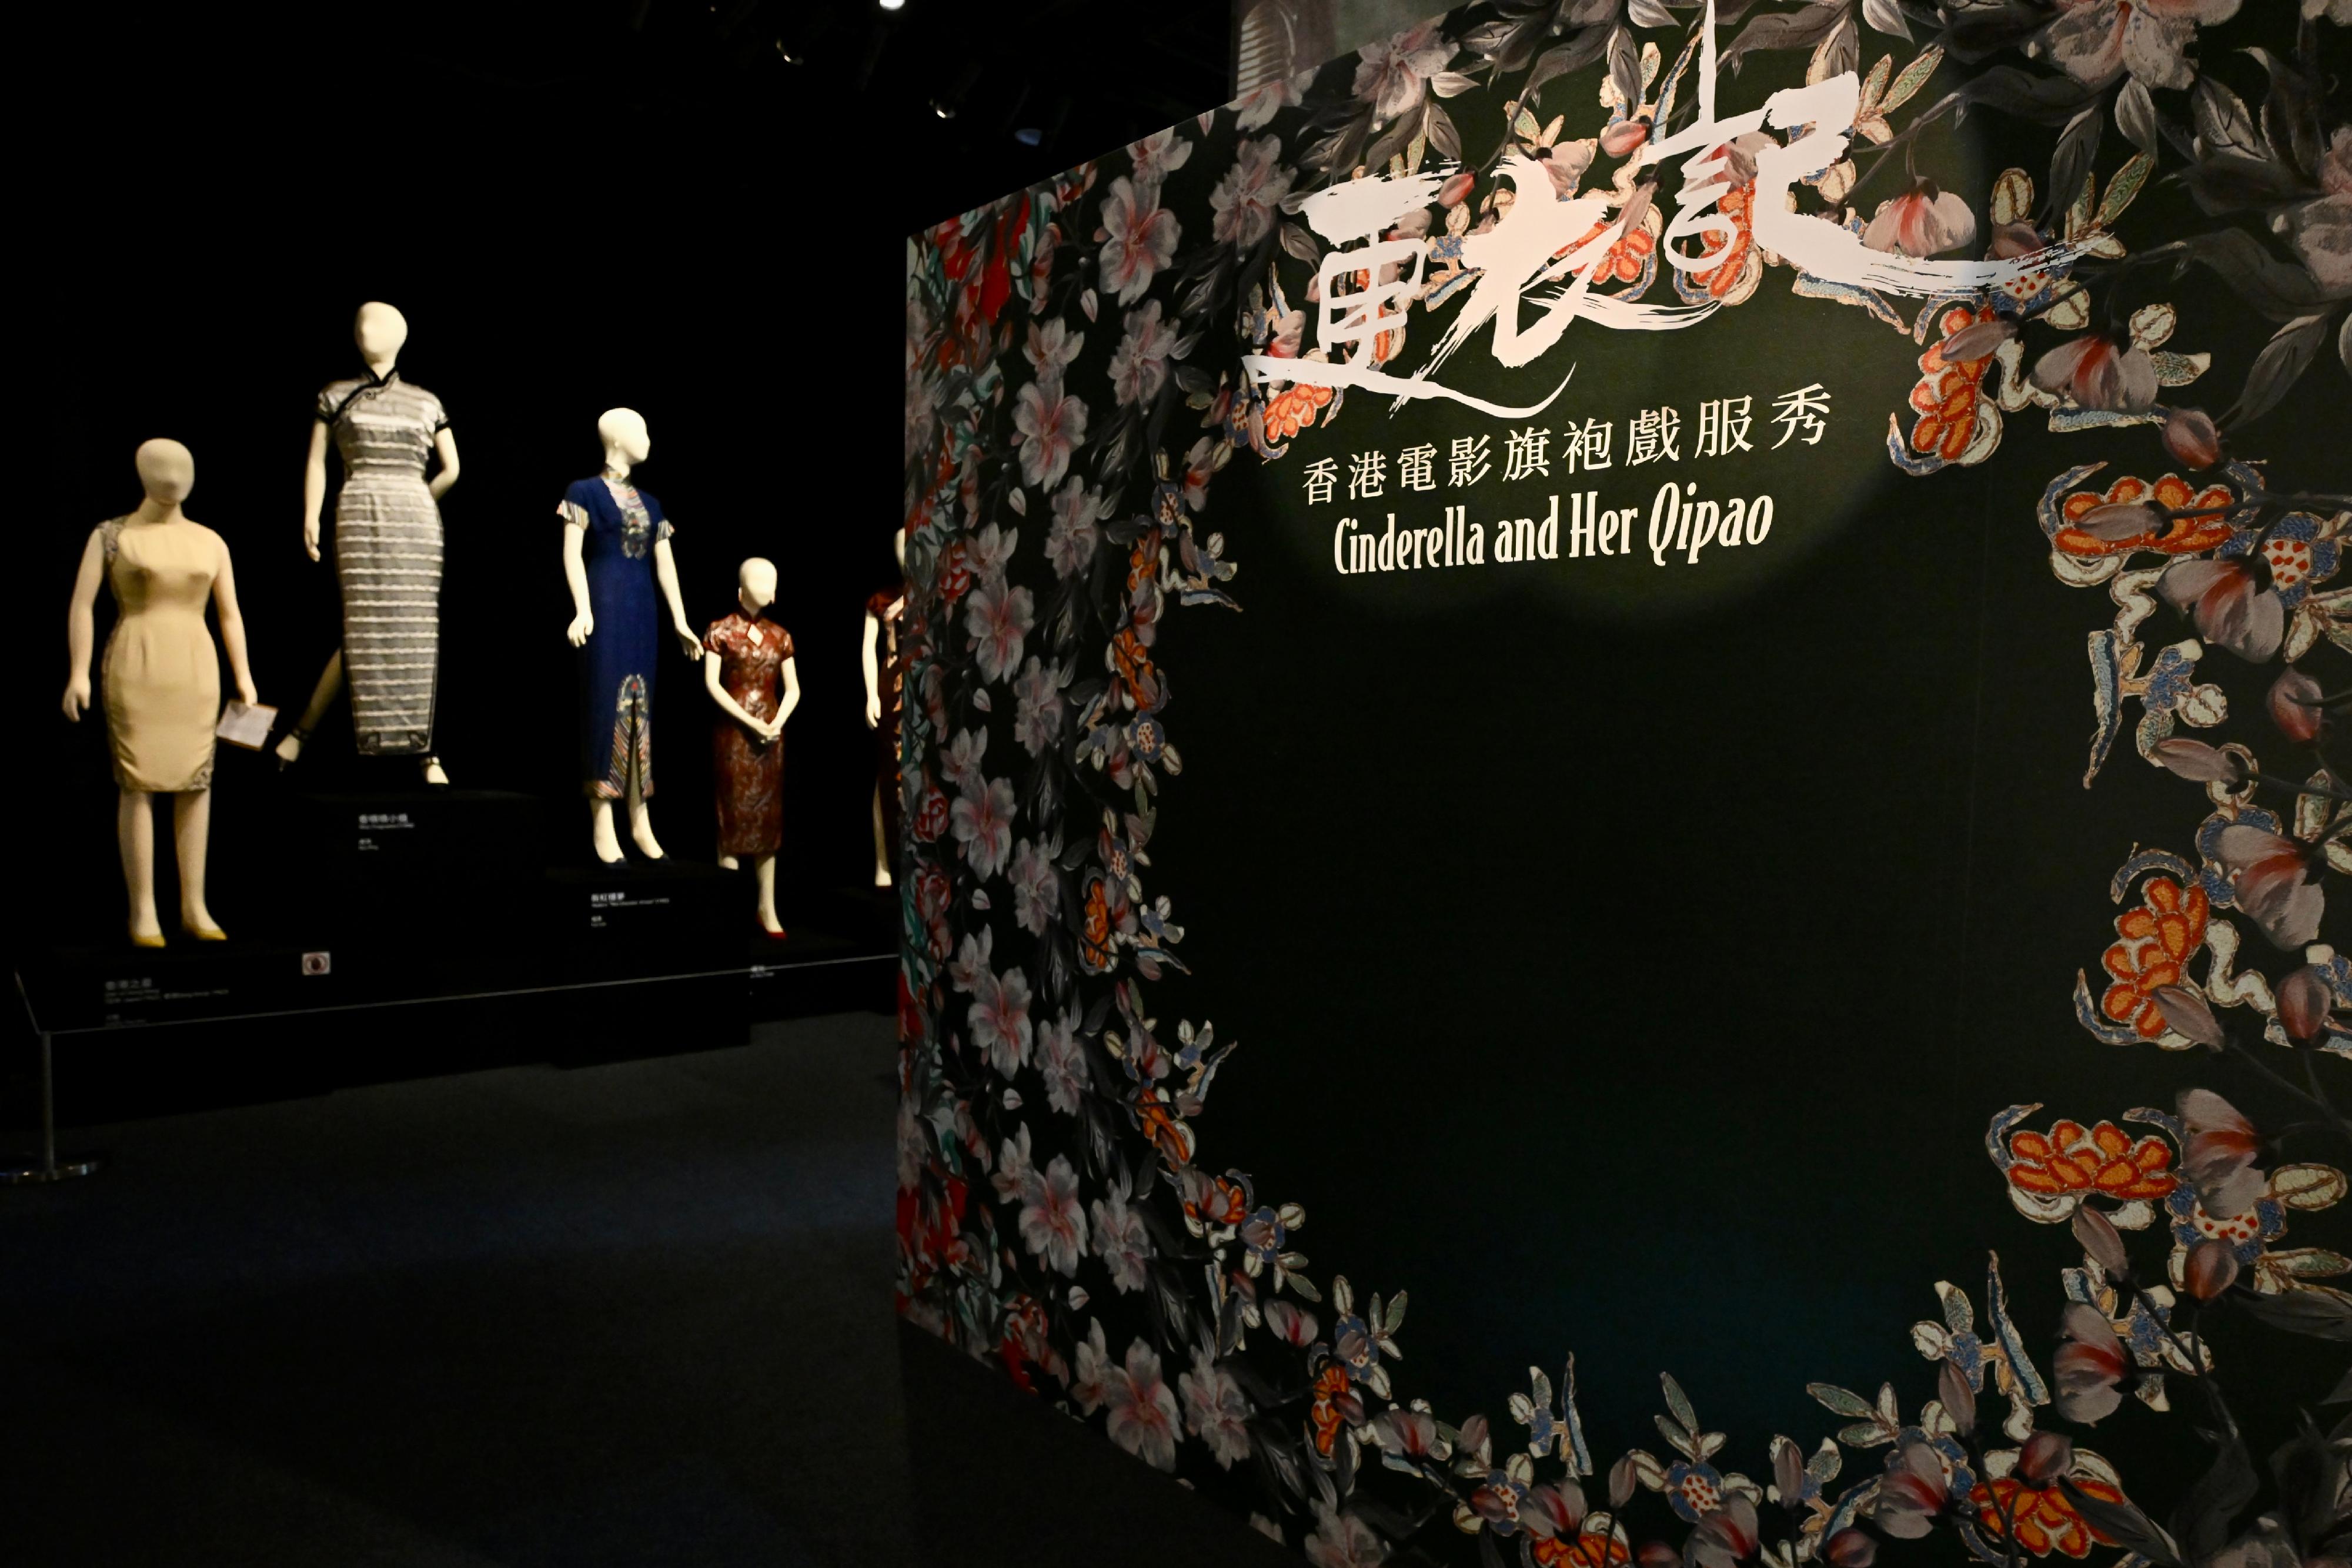 康樂及文化事務署香港電影資料館（資料館），由今日（十一月三日）至明年五月五日在資料館展覽廳舉辦「更衣記——香港電影旗袍戲服秀」展覽，展出31套由多位經典女星在一九五○至九○年代的電影中穿着過的旗袍戲服，重現不同時代電影展現的流行風尚。

